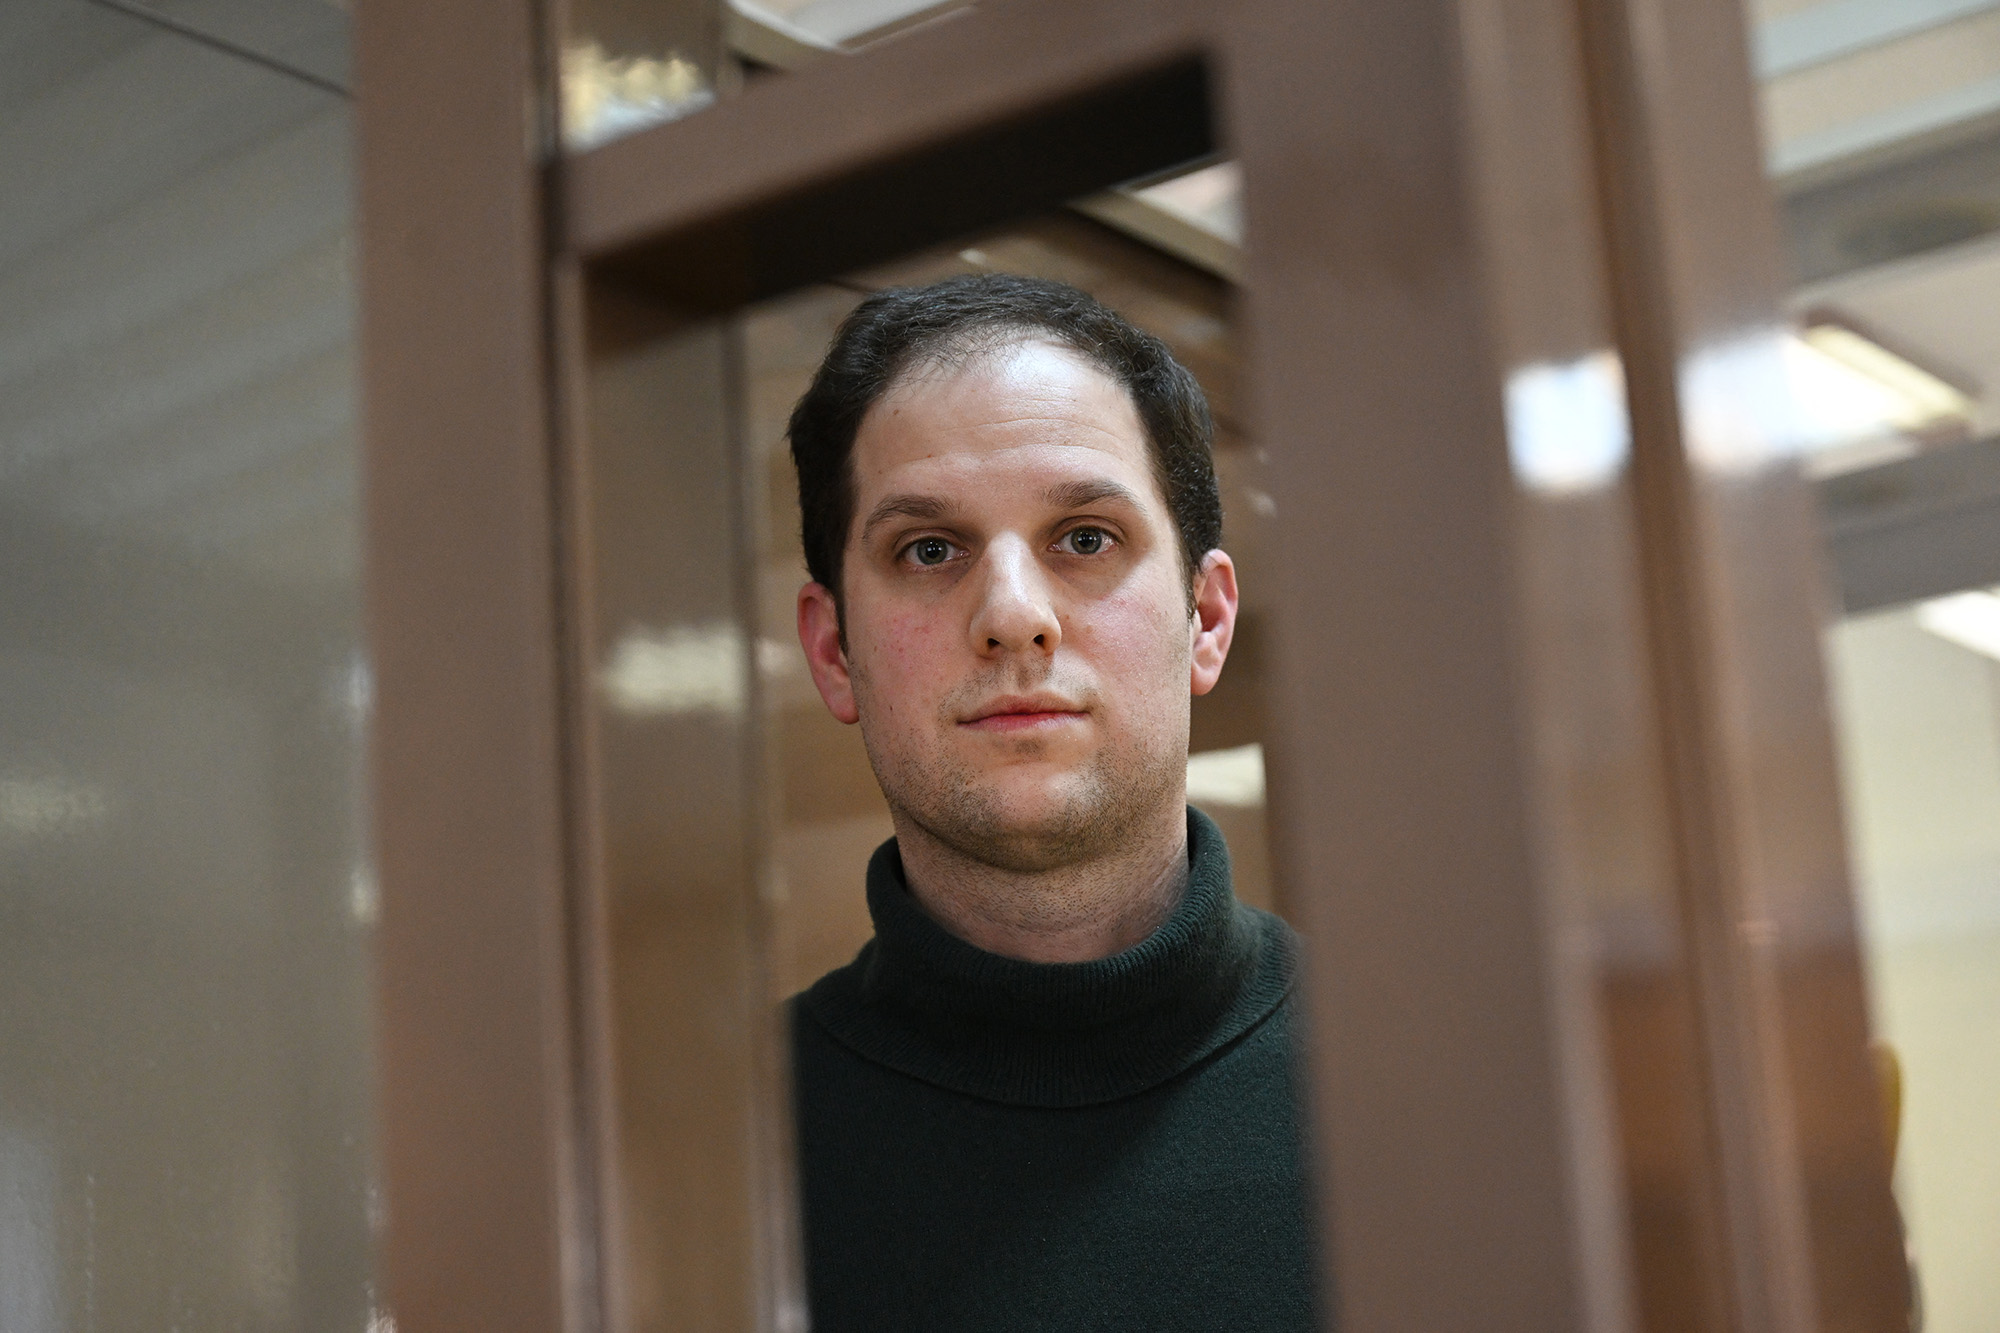 El periodista estadounidense Evan Gershkovich aparece dentro de la jaula de un acusado antes de una audiencia para considerar una apelación sobre su detención preventiva prolongada, en el Tribunal Municipal de Moscú, Rusia, el 20 de febrero.